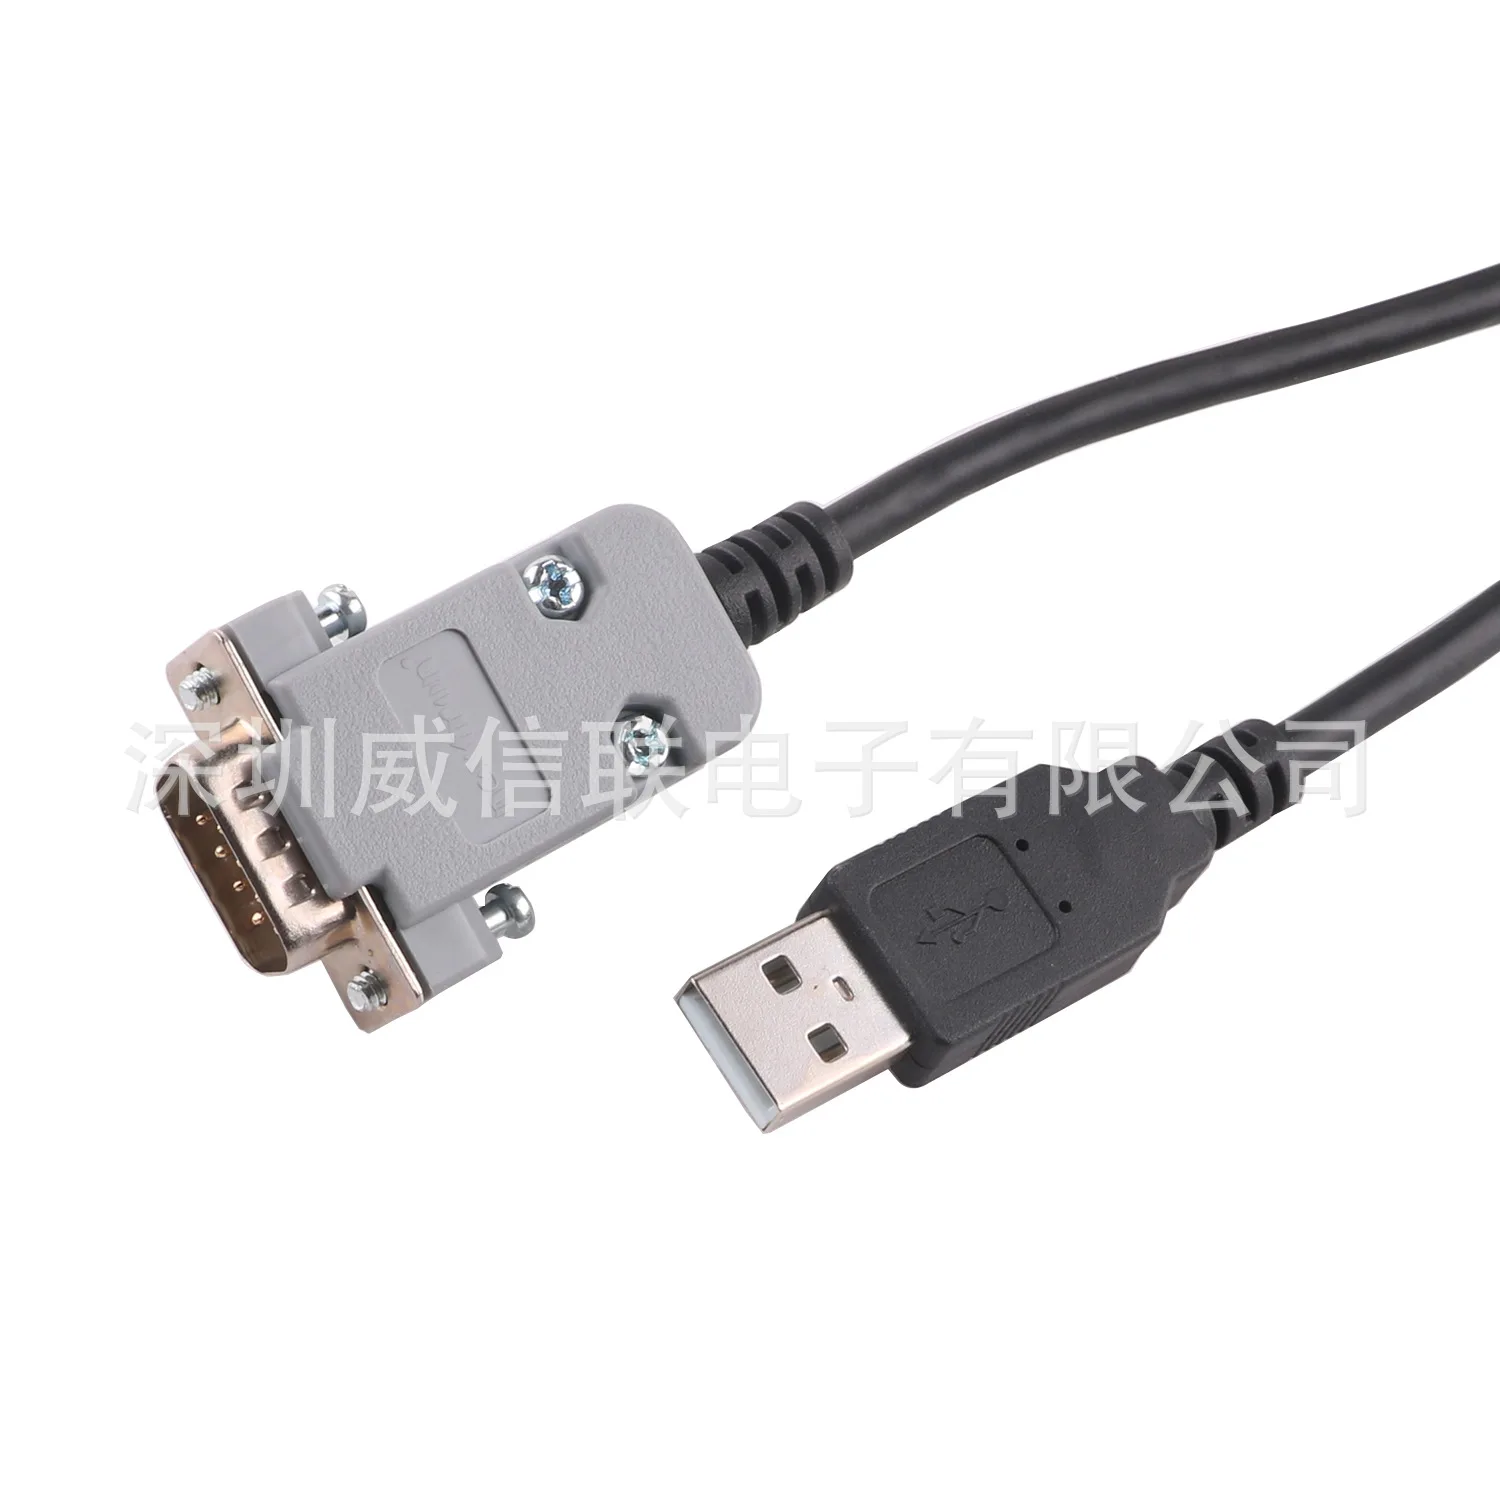 

Кабель Usb-последовательного отладки rs232 кабель FTDI последовательный порт 9-контактный кабель DB9 штекер для передачи данных кабель для подключения к компьютеру